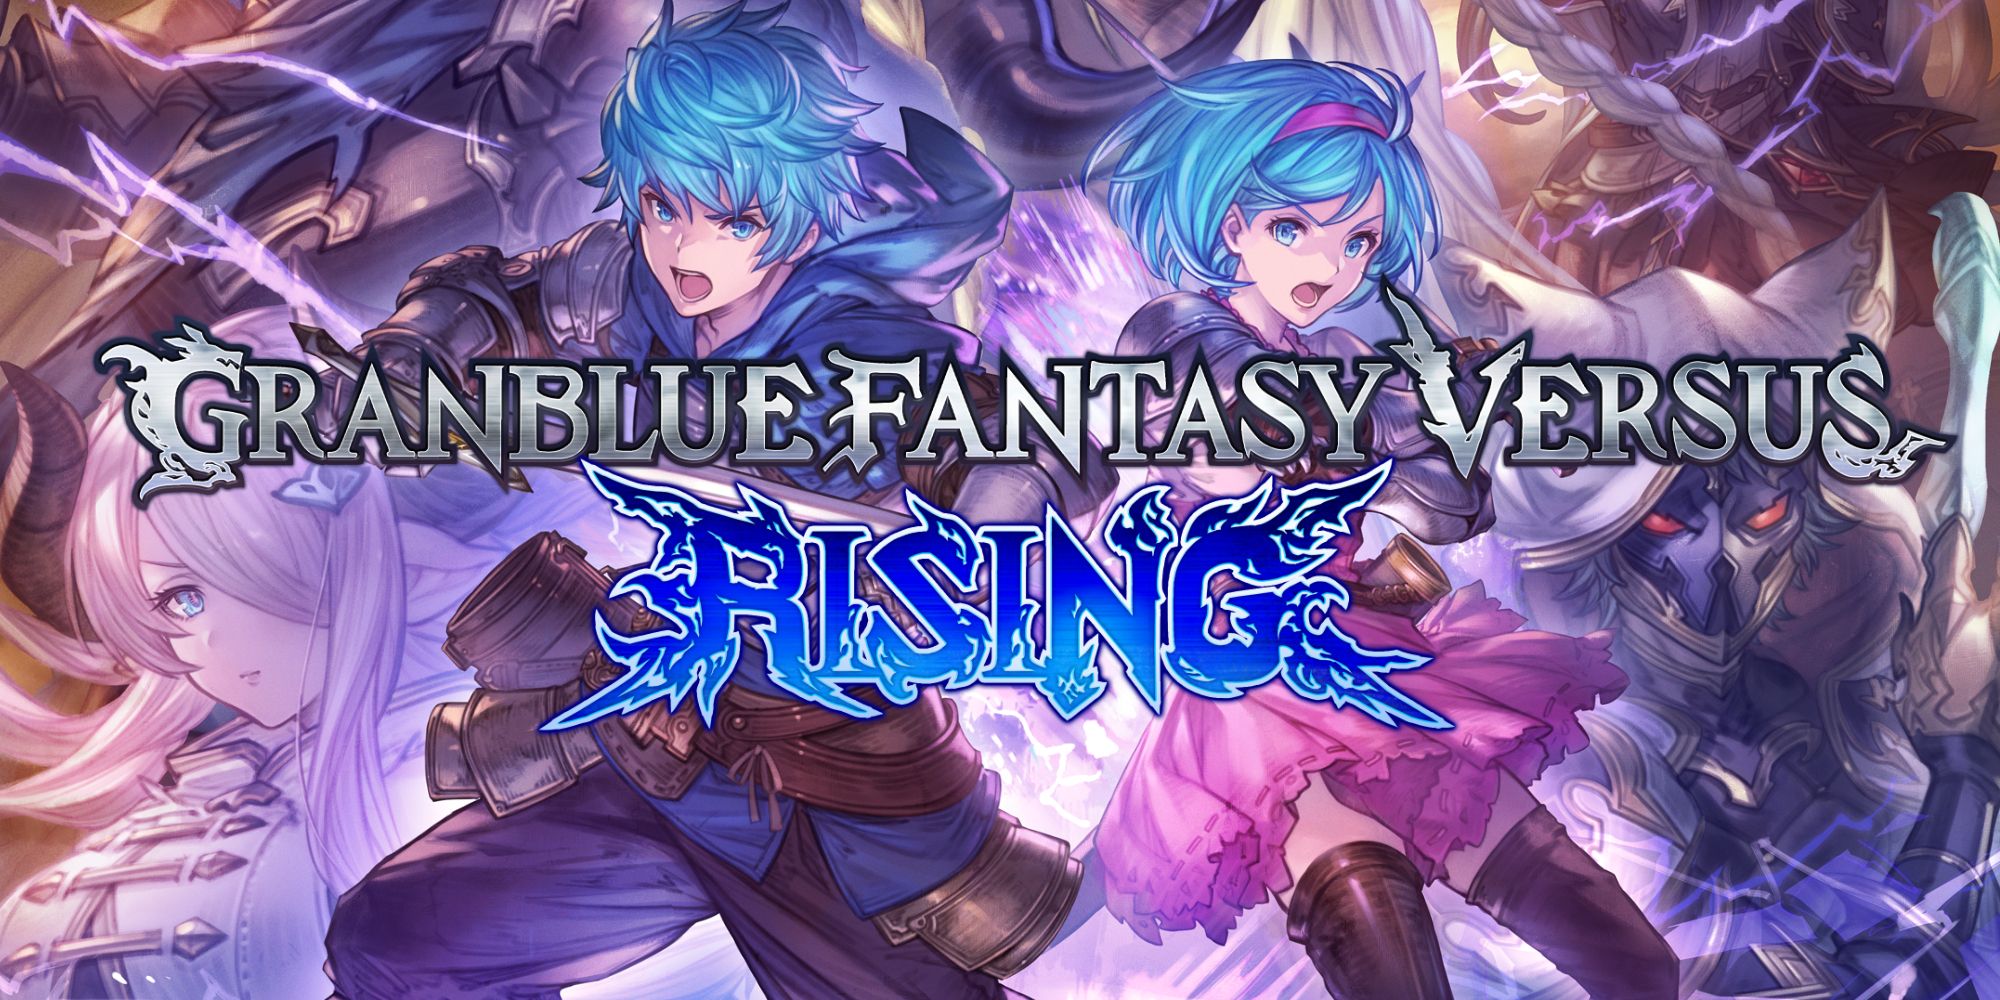 Granblue Fantasy Versus: Rising Review